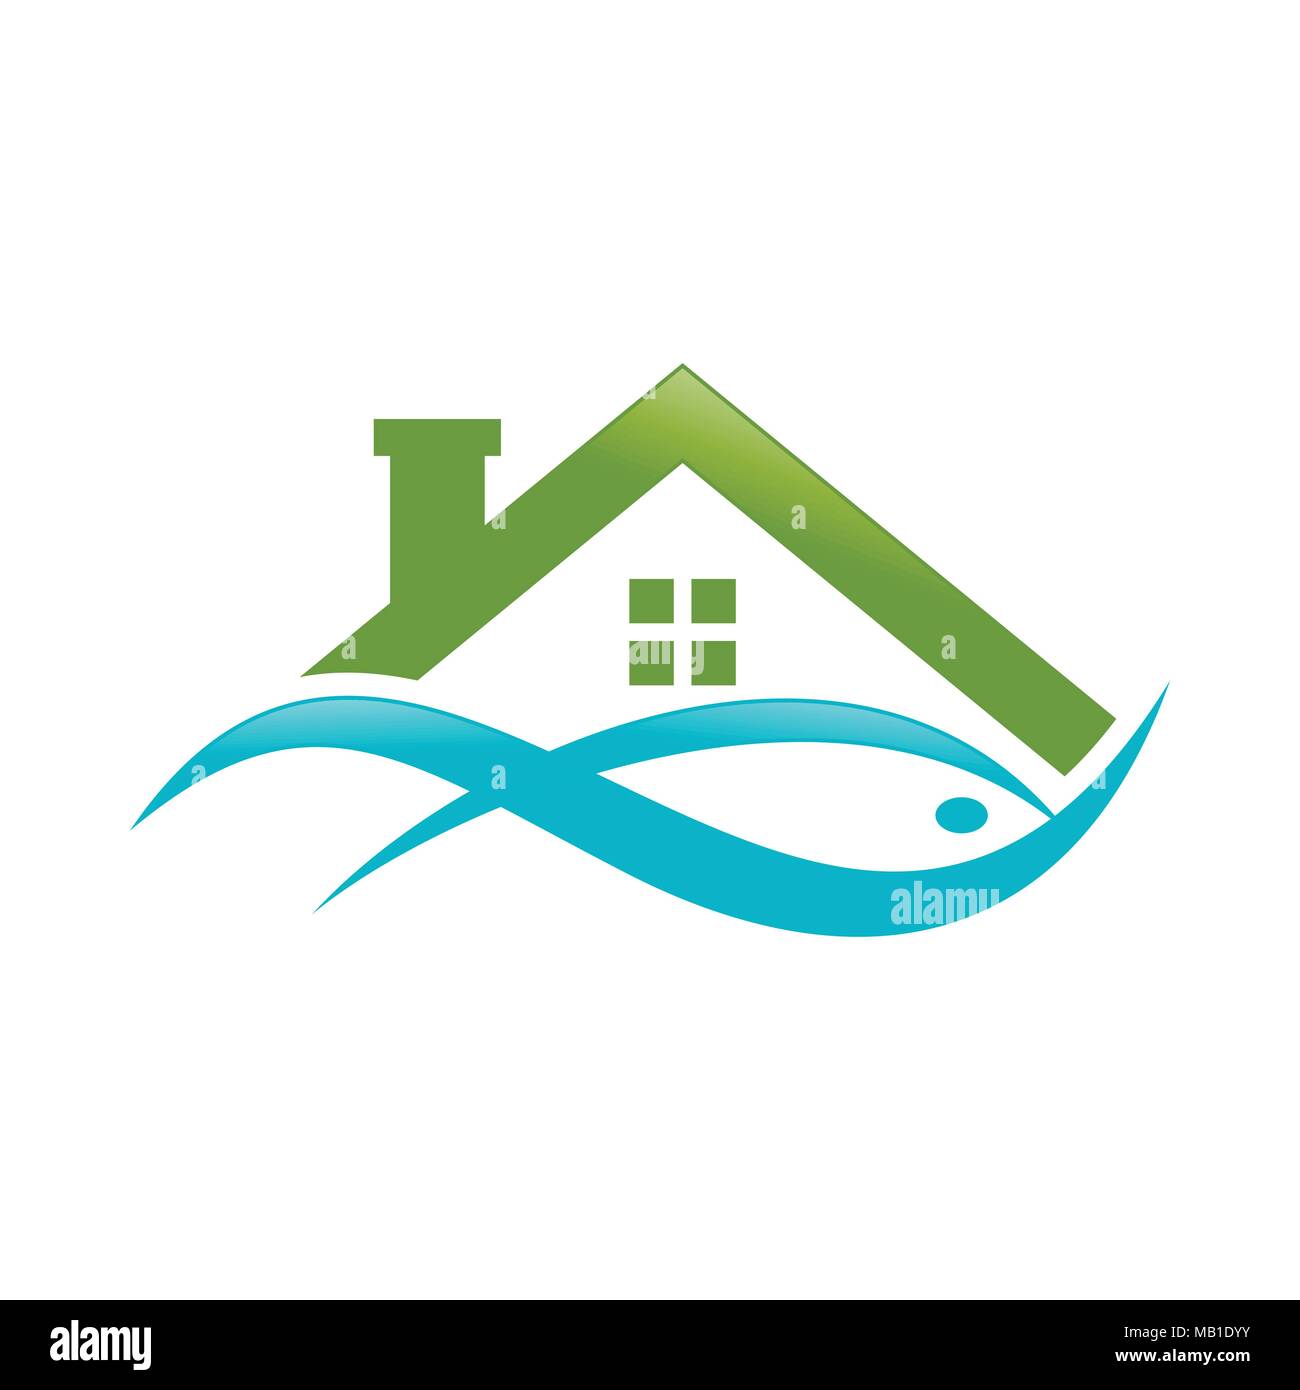 Résumé Lake House Poisson symbole du logo vert aqueux Vector Graphic Design Illustration de Vecteur